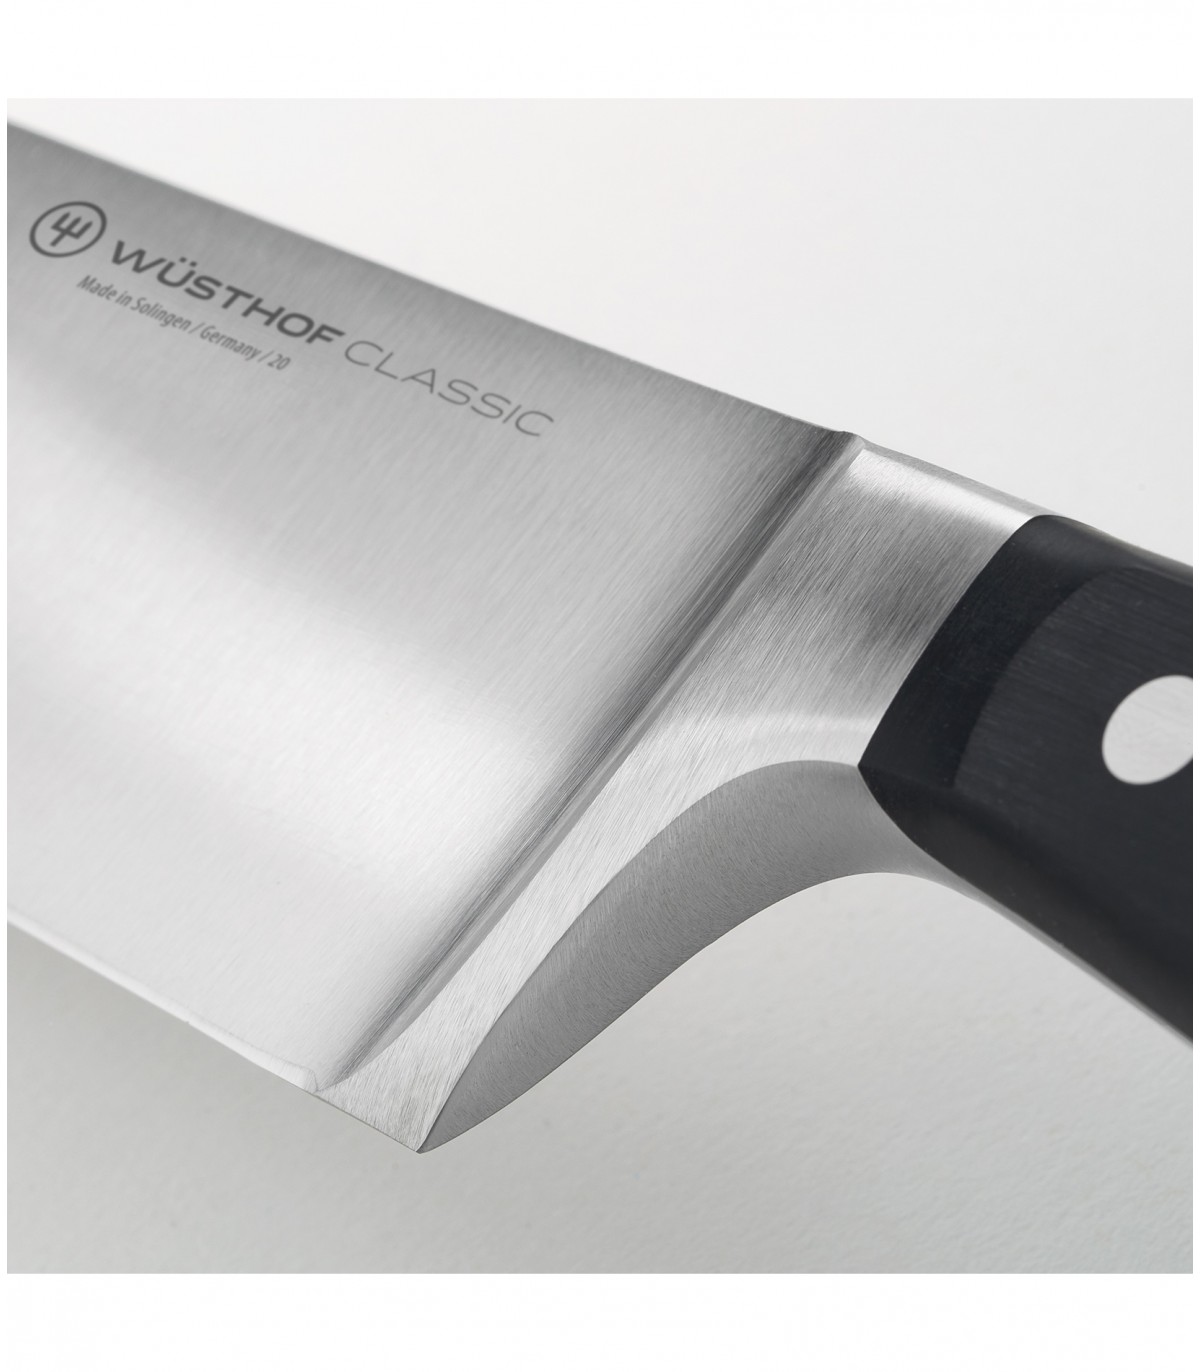 Μαχαίρι Φιλέτου Ψαριού (flexible) 16cm Classic Wusthof 1040102916 - 4